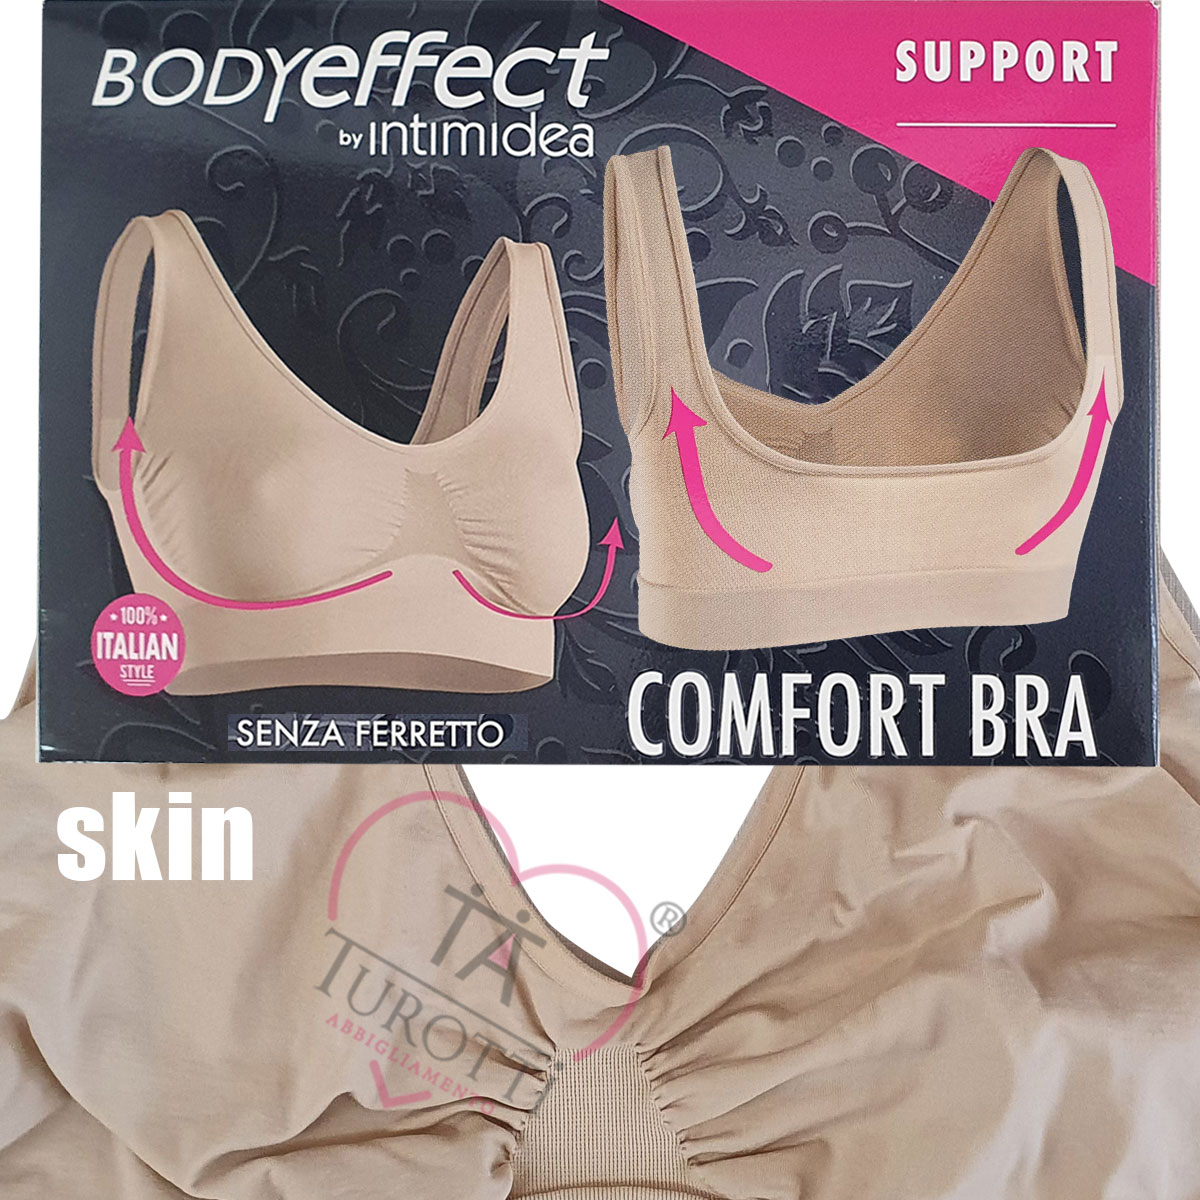 Comfort Bra support Bodyeffect Intimidea - Turotti Abbigliamento